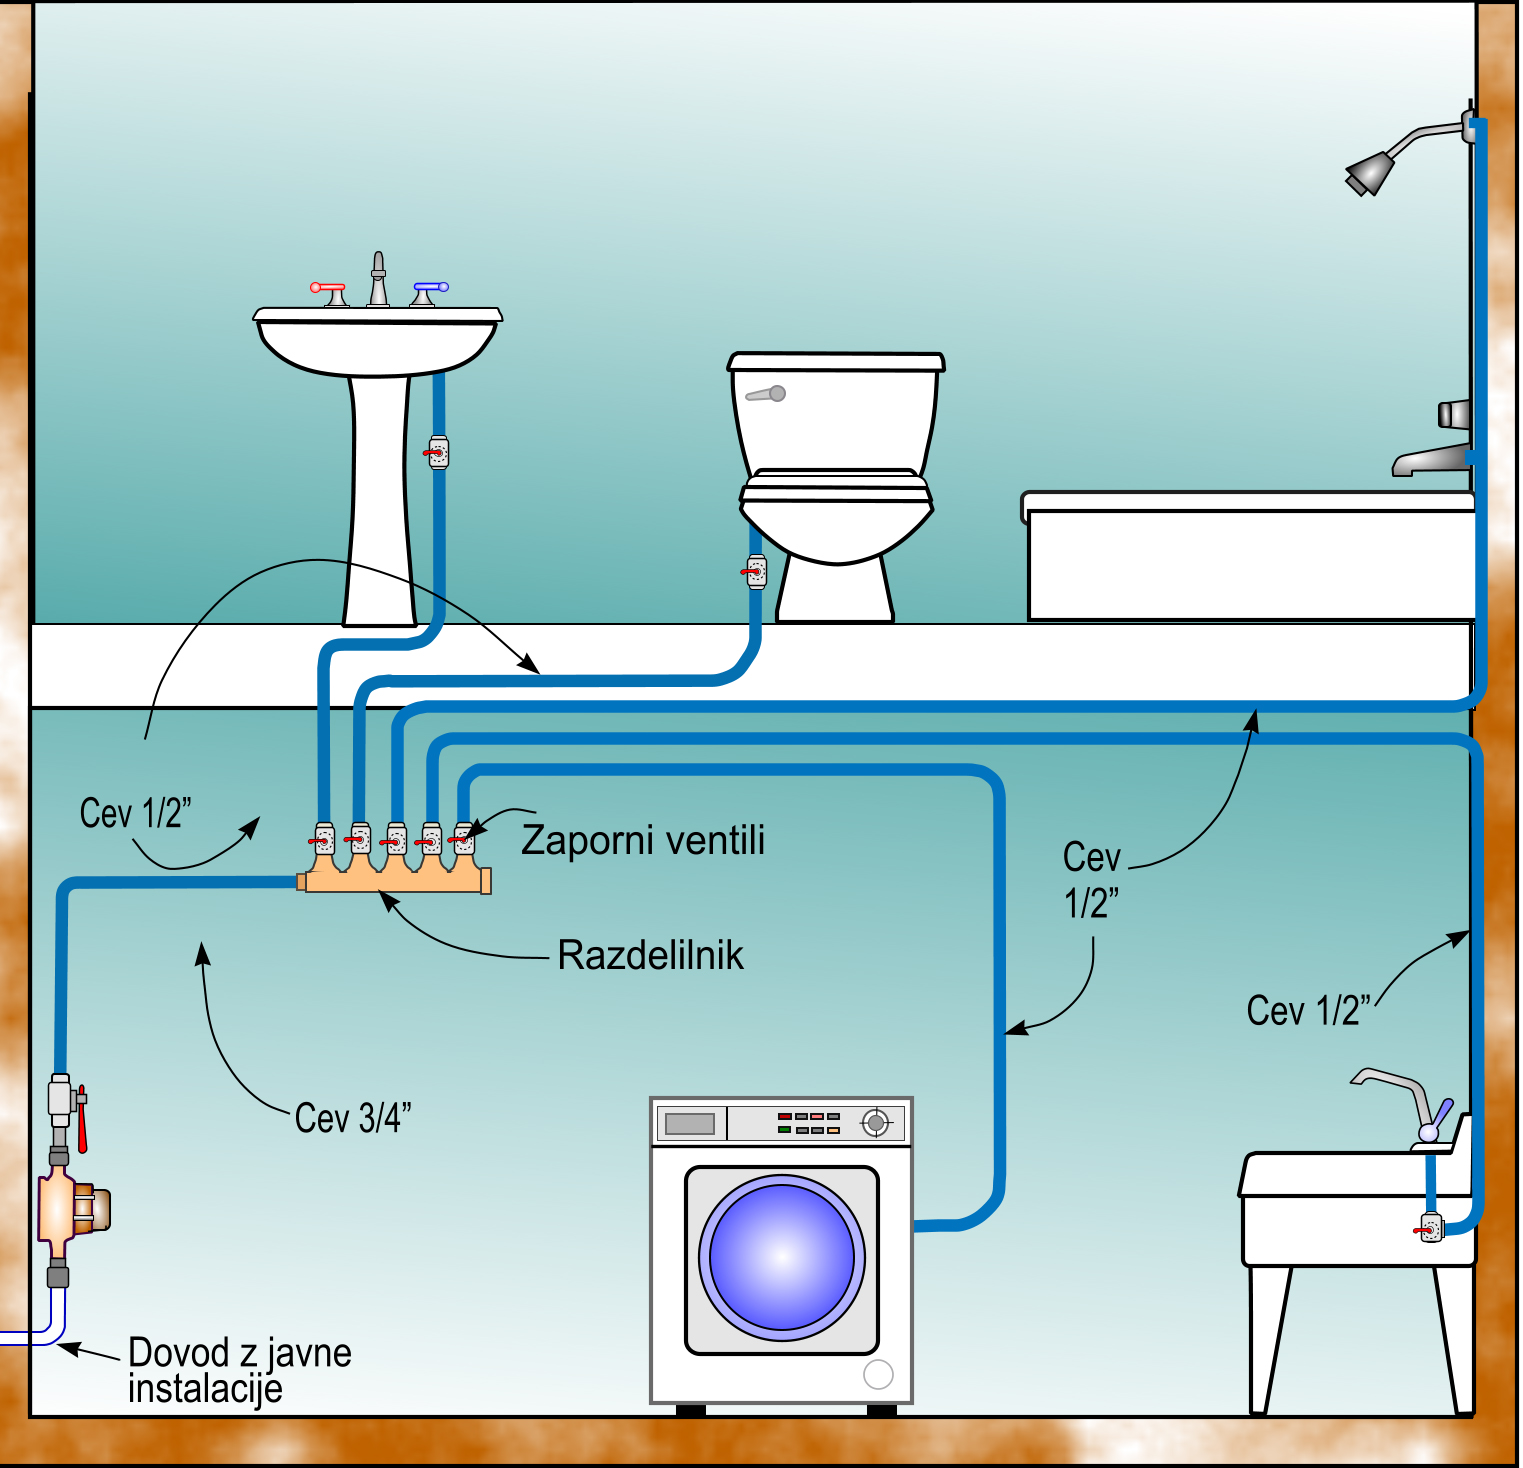 Sistem za domačo uporabo porabi za vgradnjo najmanj cevi in ima najmanjšo porabo vroče vode-_1